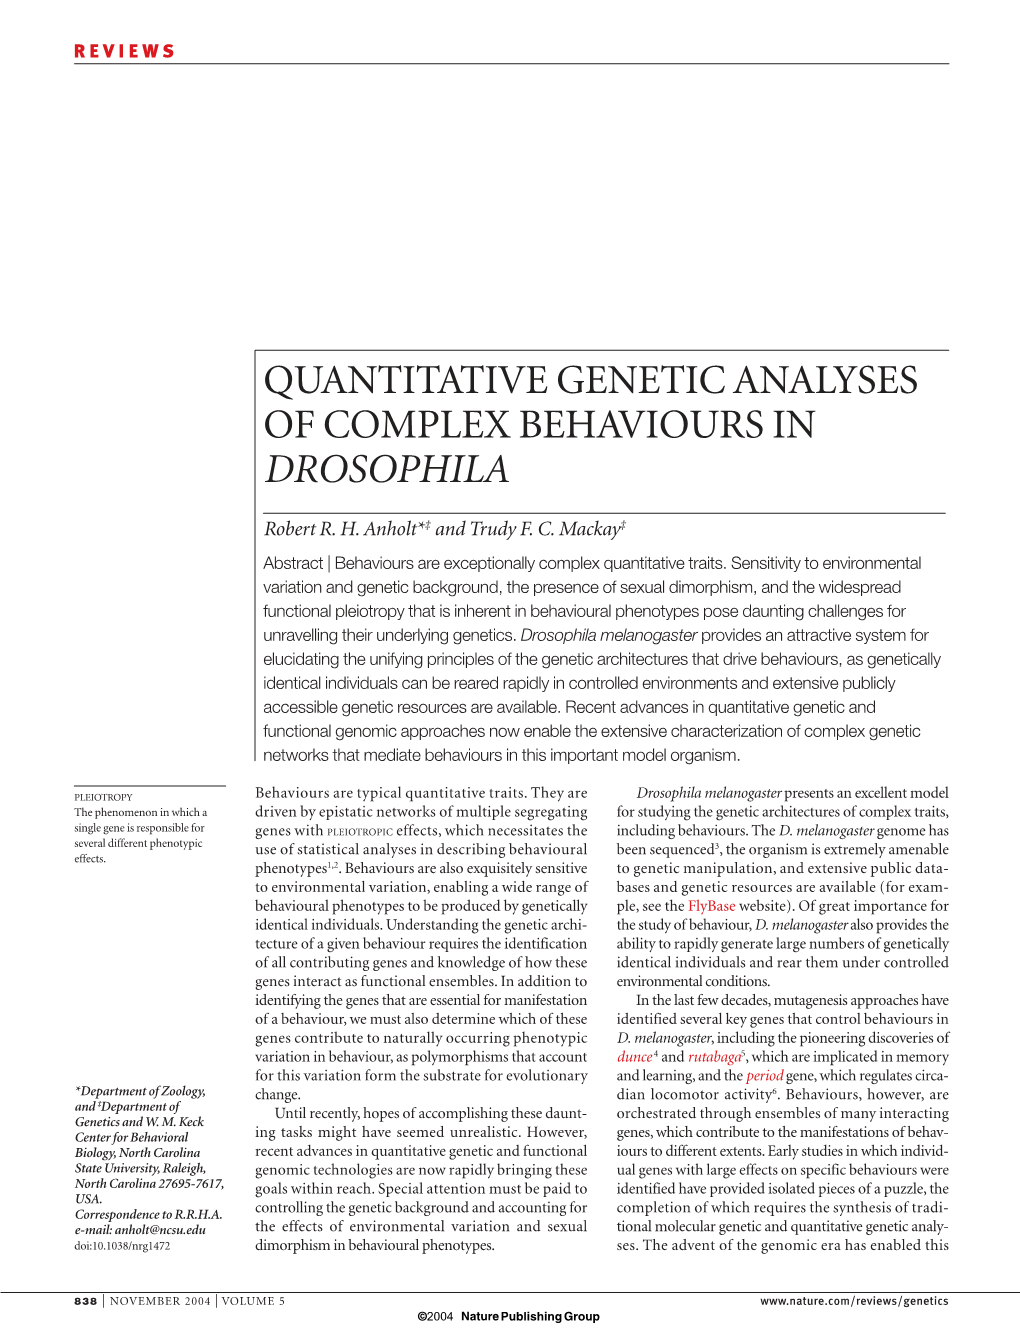 Quantitative Genetic Analyses of Complex Behaviours in Drosophila